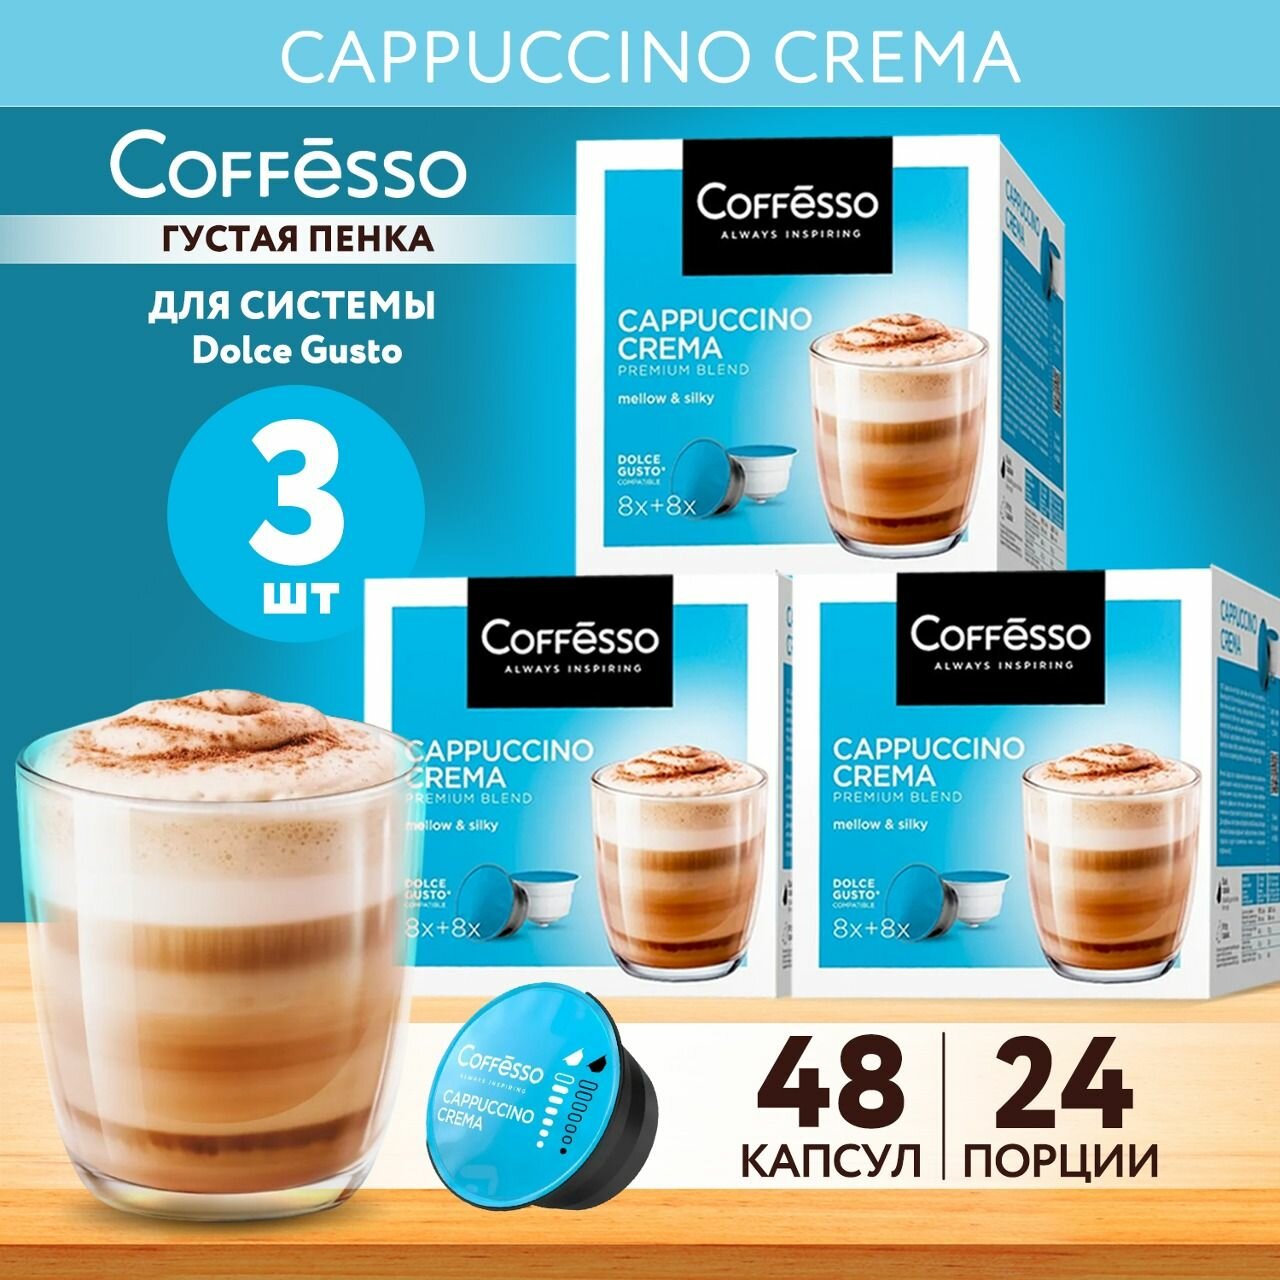 Кофе в капсулах Coffesso CAPPUCCINO CREMA для кофемашины Dolce Gusto, 3 упаковки по 16 капсул